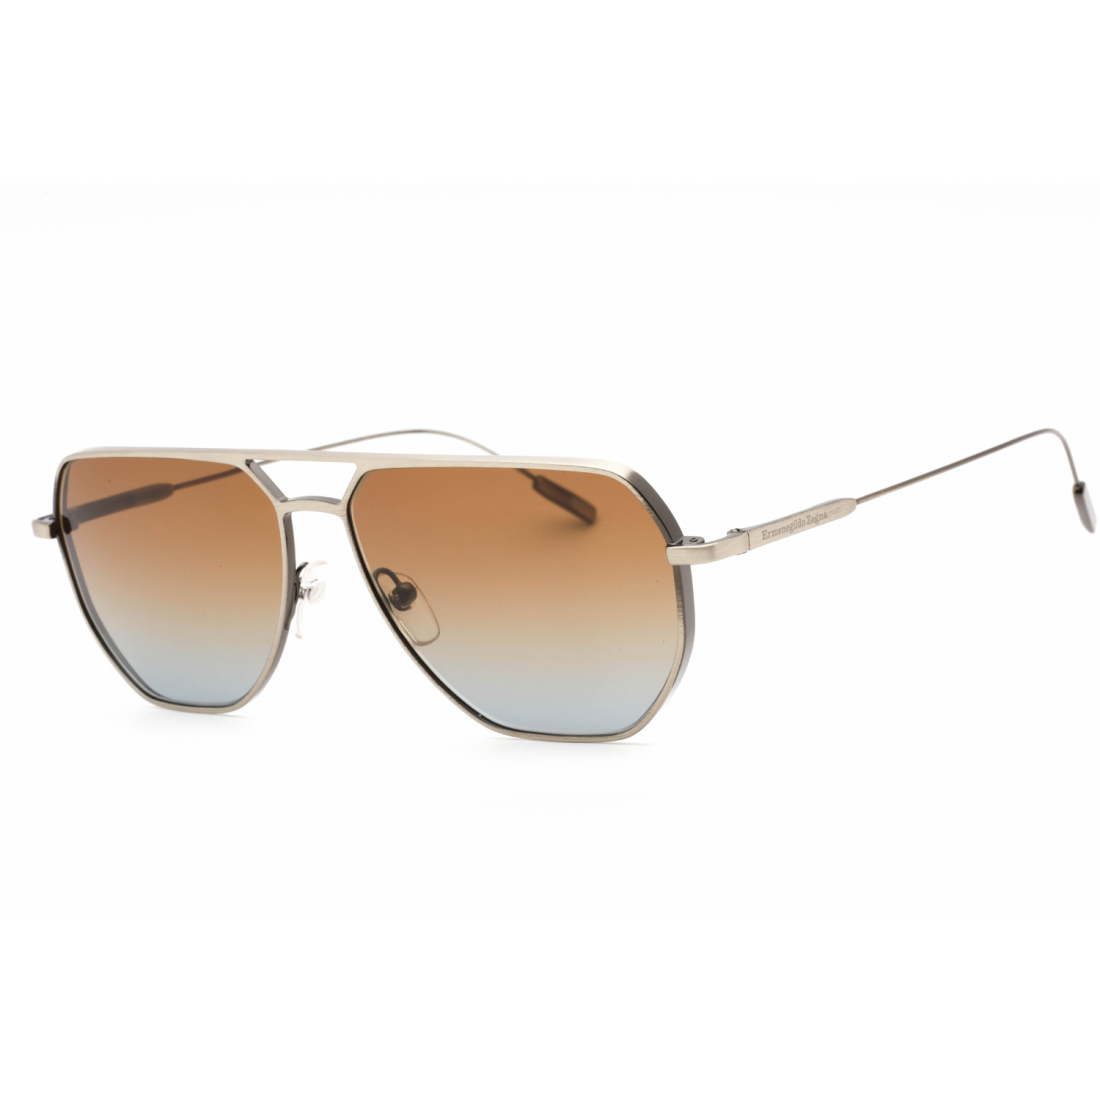 Men's 'EZ0207' Sunglasses